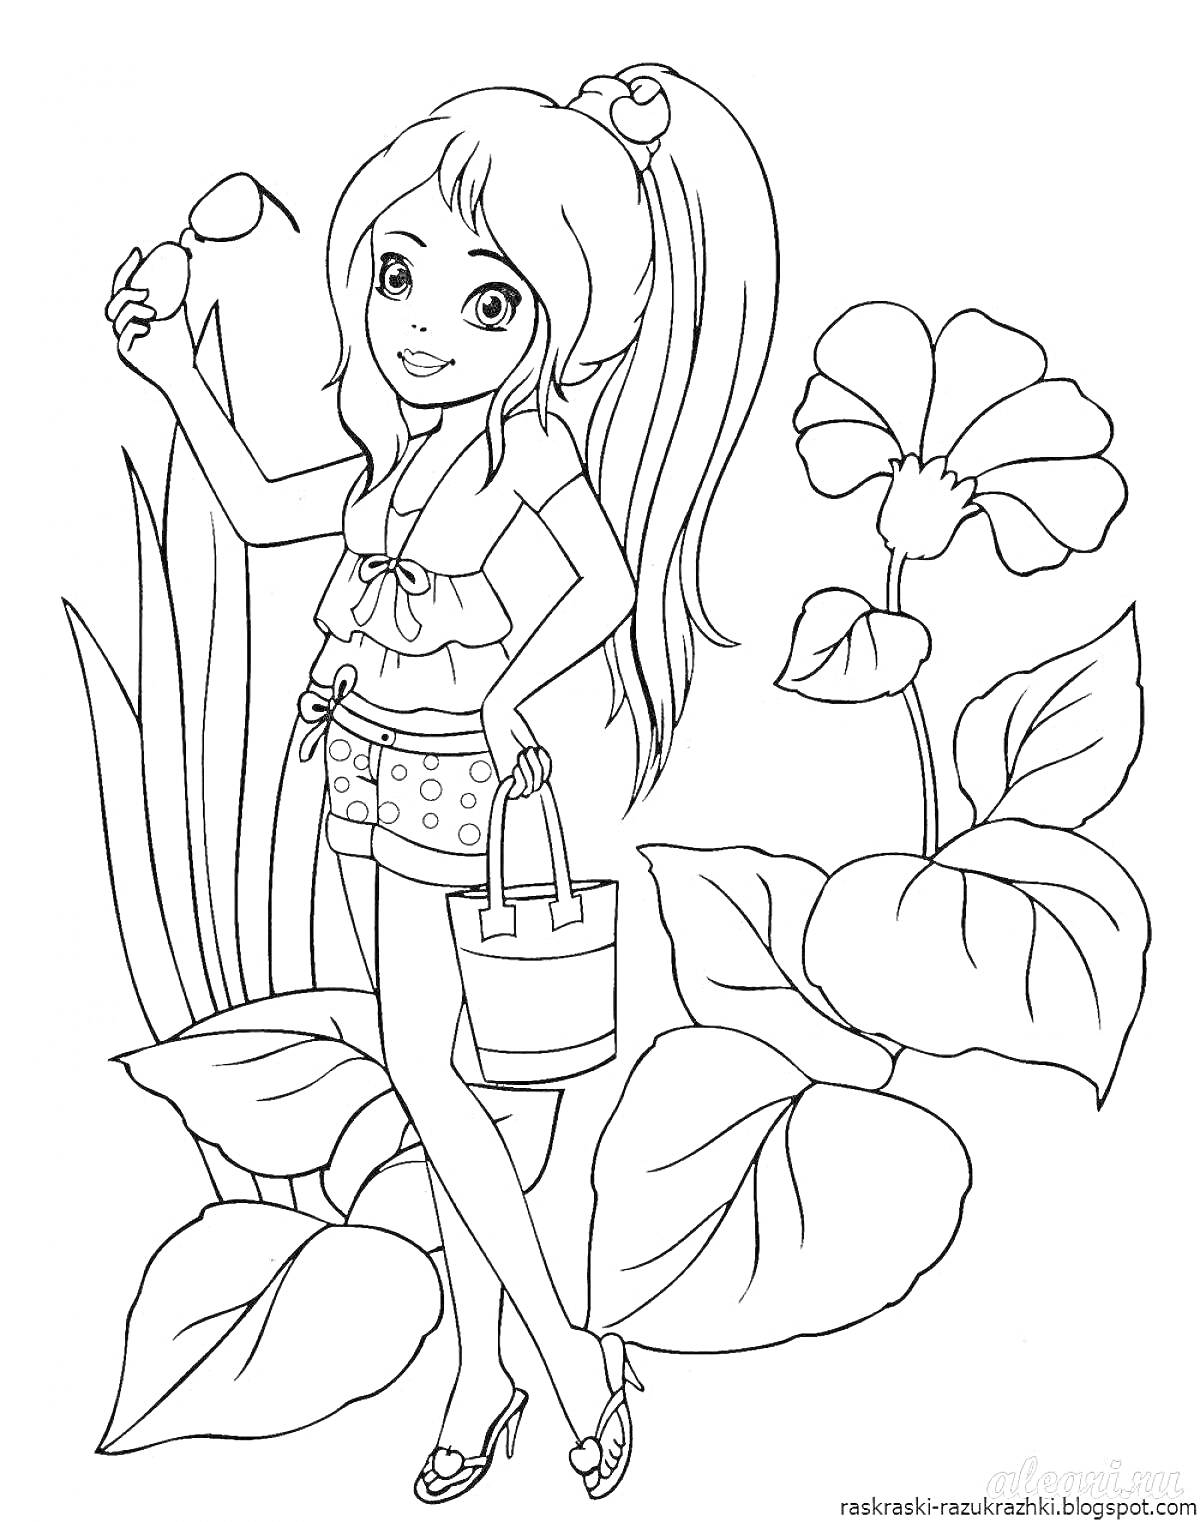 Раскраска Девочка с длинными волосами, цветок, большие листья, сумка, солнцезащитные очки, футболка, шорты, сандали